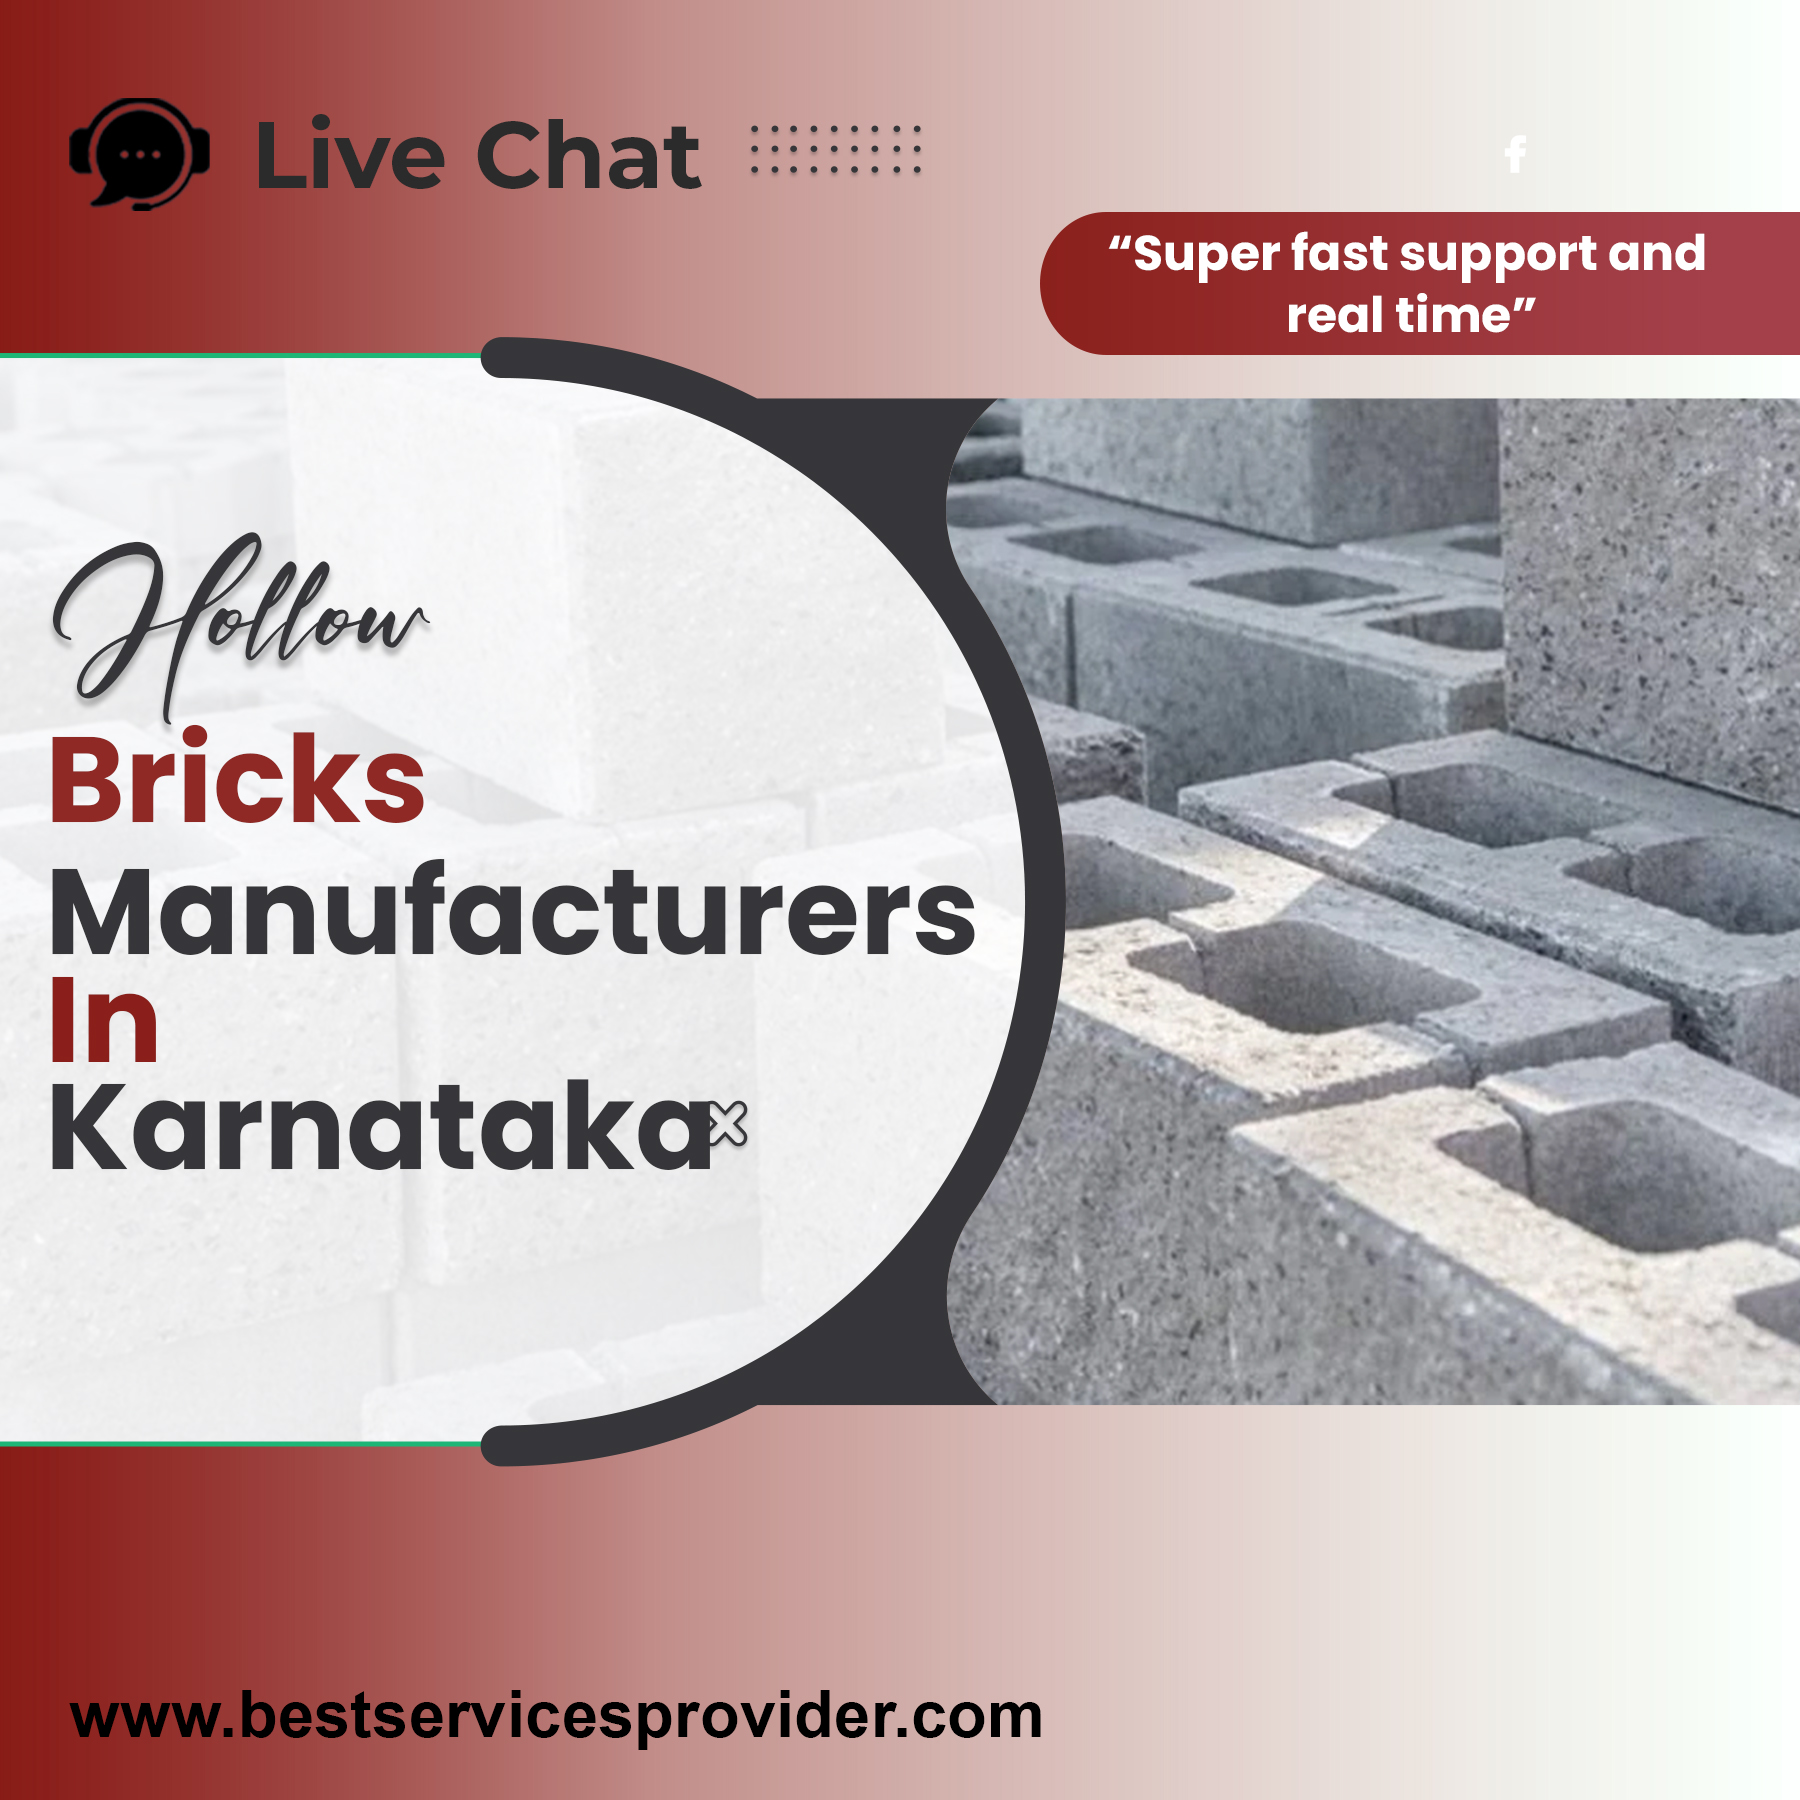 Hollow Bricks Manufacturers In Karnataka